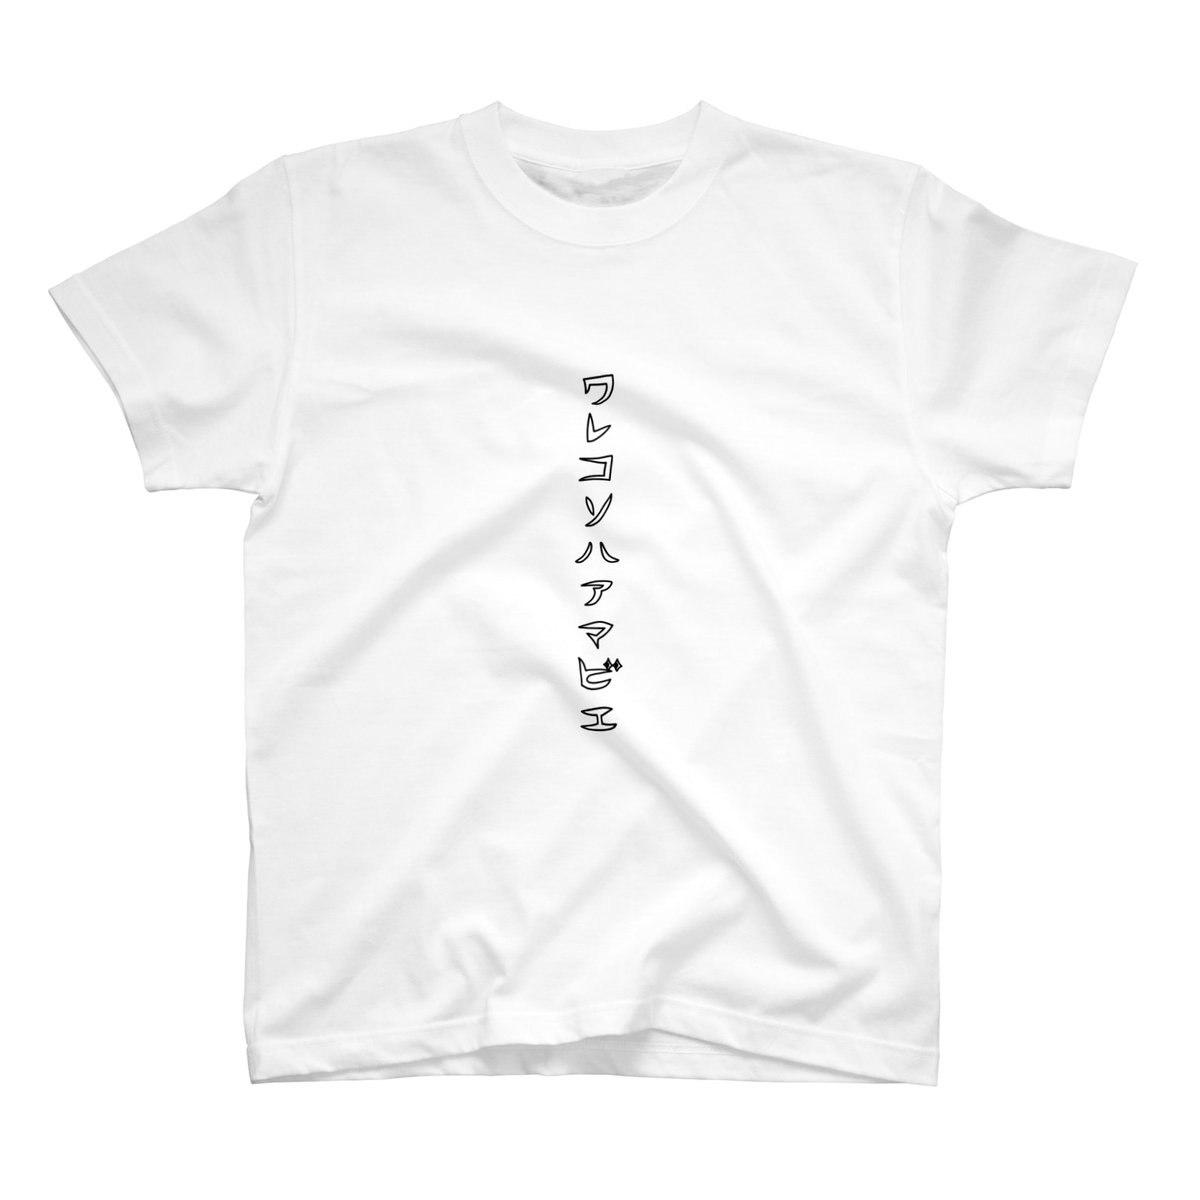 【AKINO SHOP】
https://t.co/54zqaTB4YO
SUZURI 夏のTシャツセール、「Tシャツ」 「リンガーTシャツ」 「ウォッシュTシャツ」に加えて、大人気の「ビッグシルエットTシャツ」の4アイテムが1,000円OFF!
【期間】
2020年6月1日 (月) 12:00 ~ 2020年6月8日 (月) 23:59
https://t.co/u6a3jA9yBx
#SUZURI 